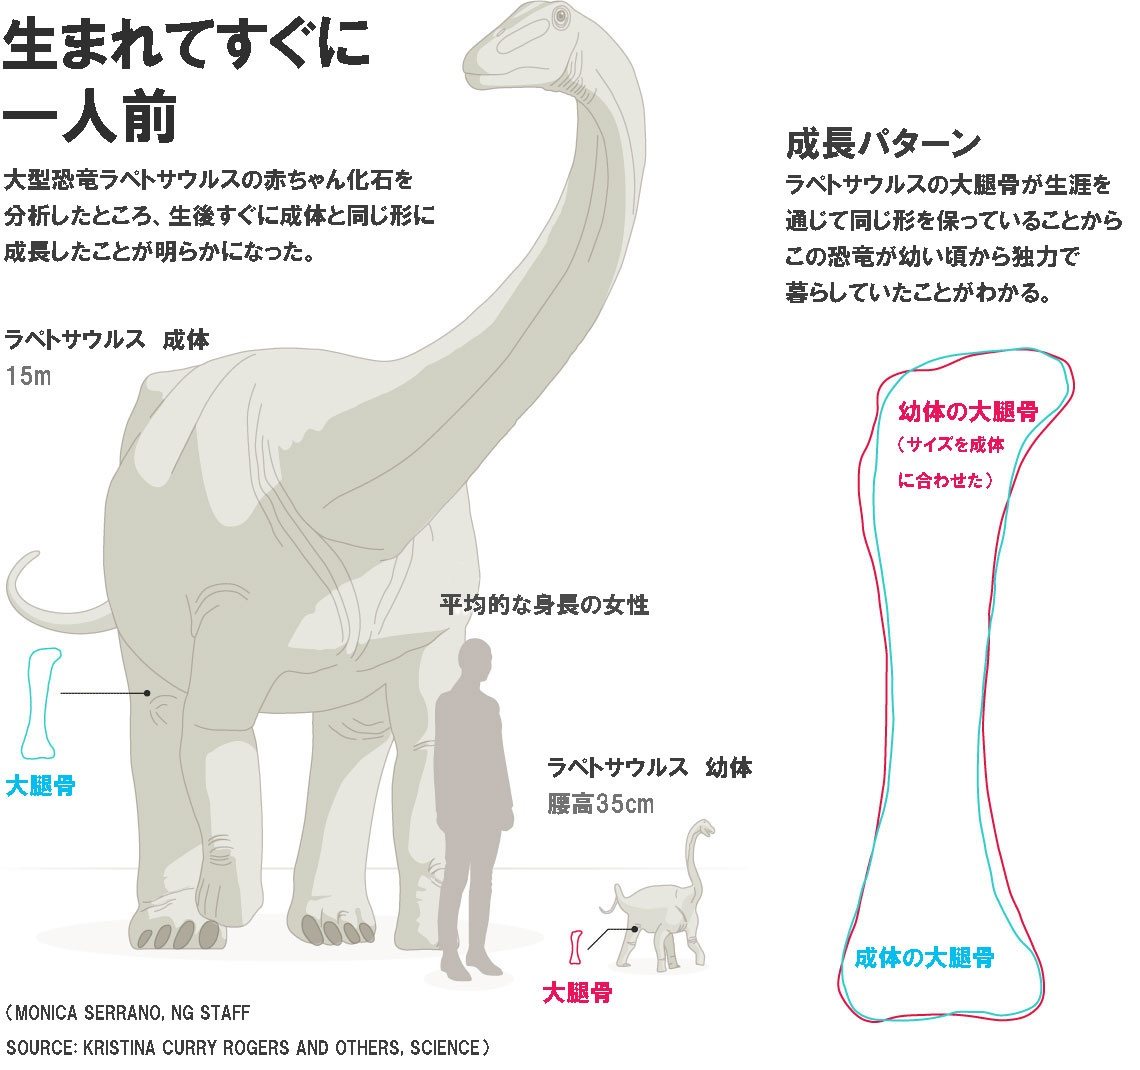 巨大恐竜の赤ちゃん 自力で生活していた ナショナルジオグラフィック日本版サイト